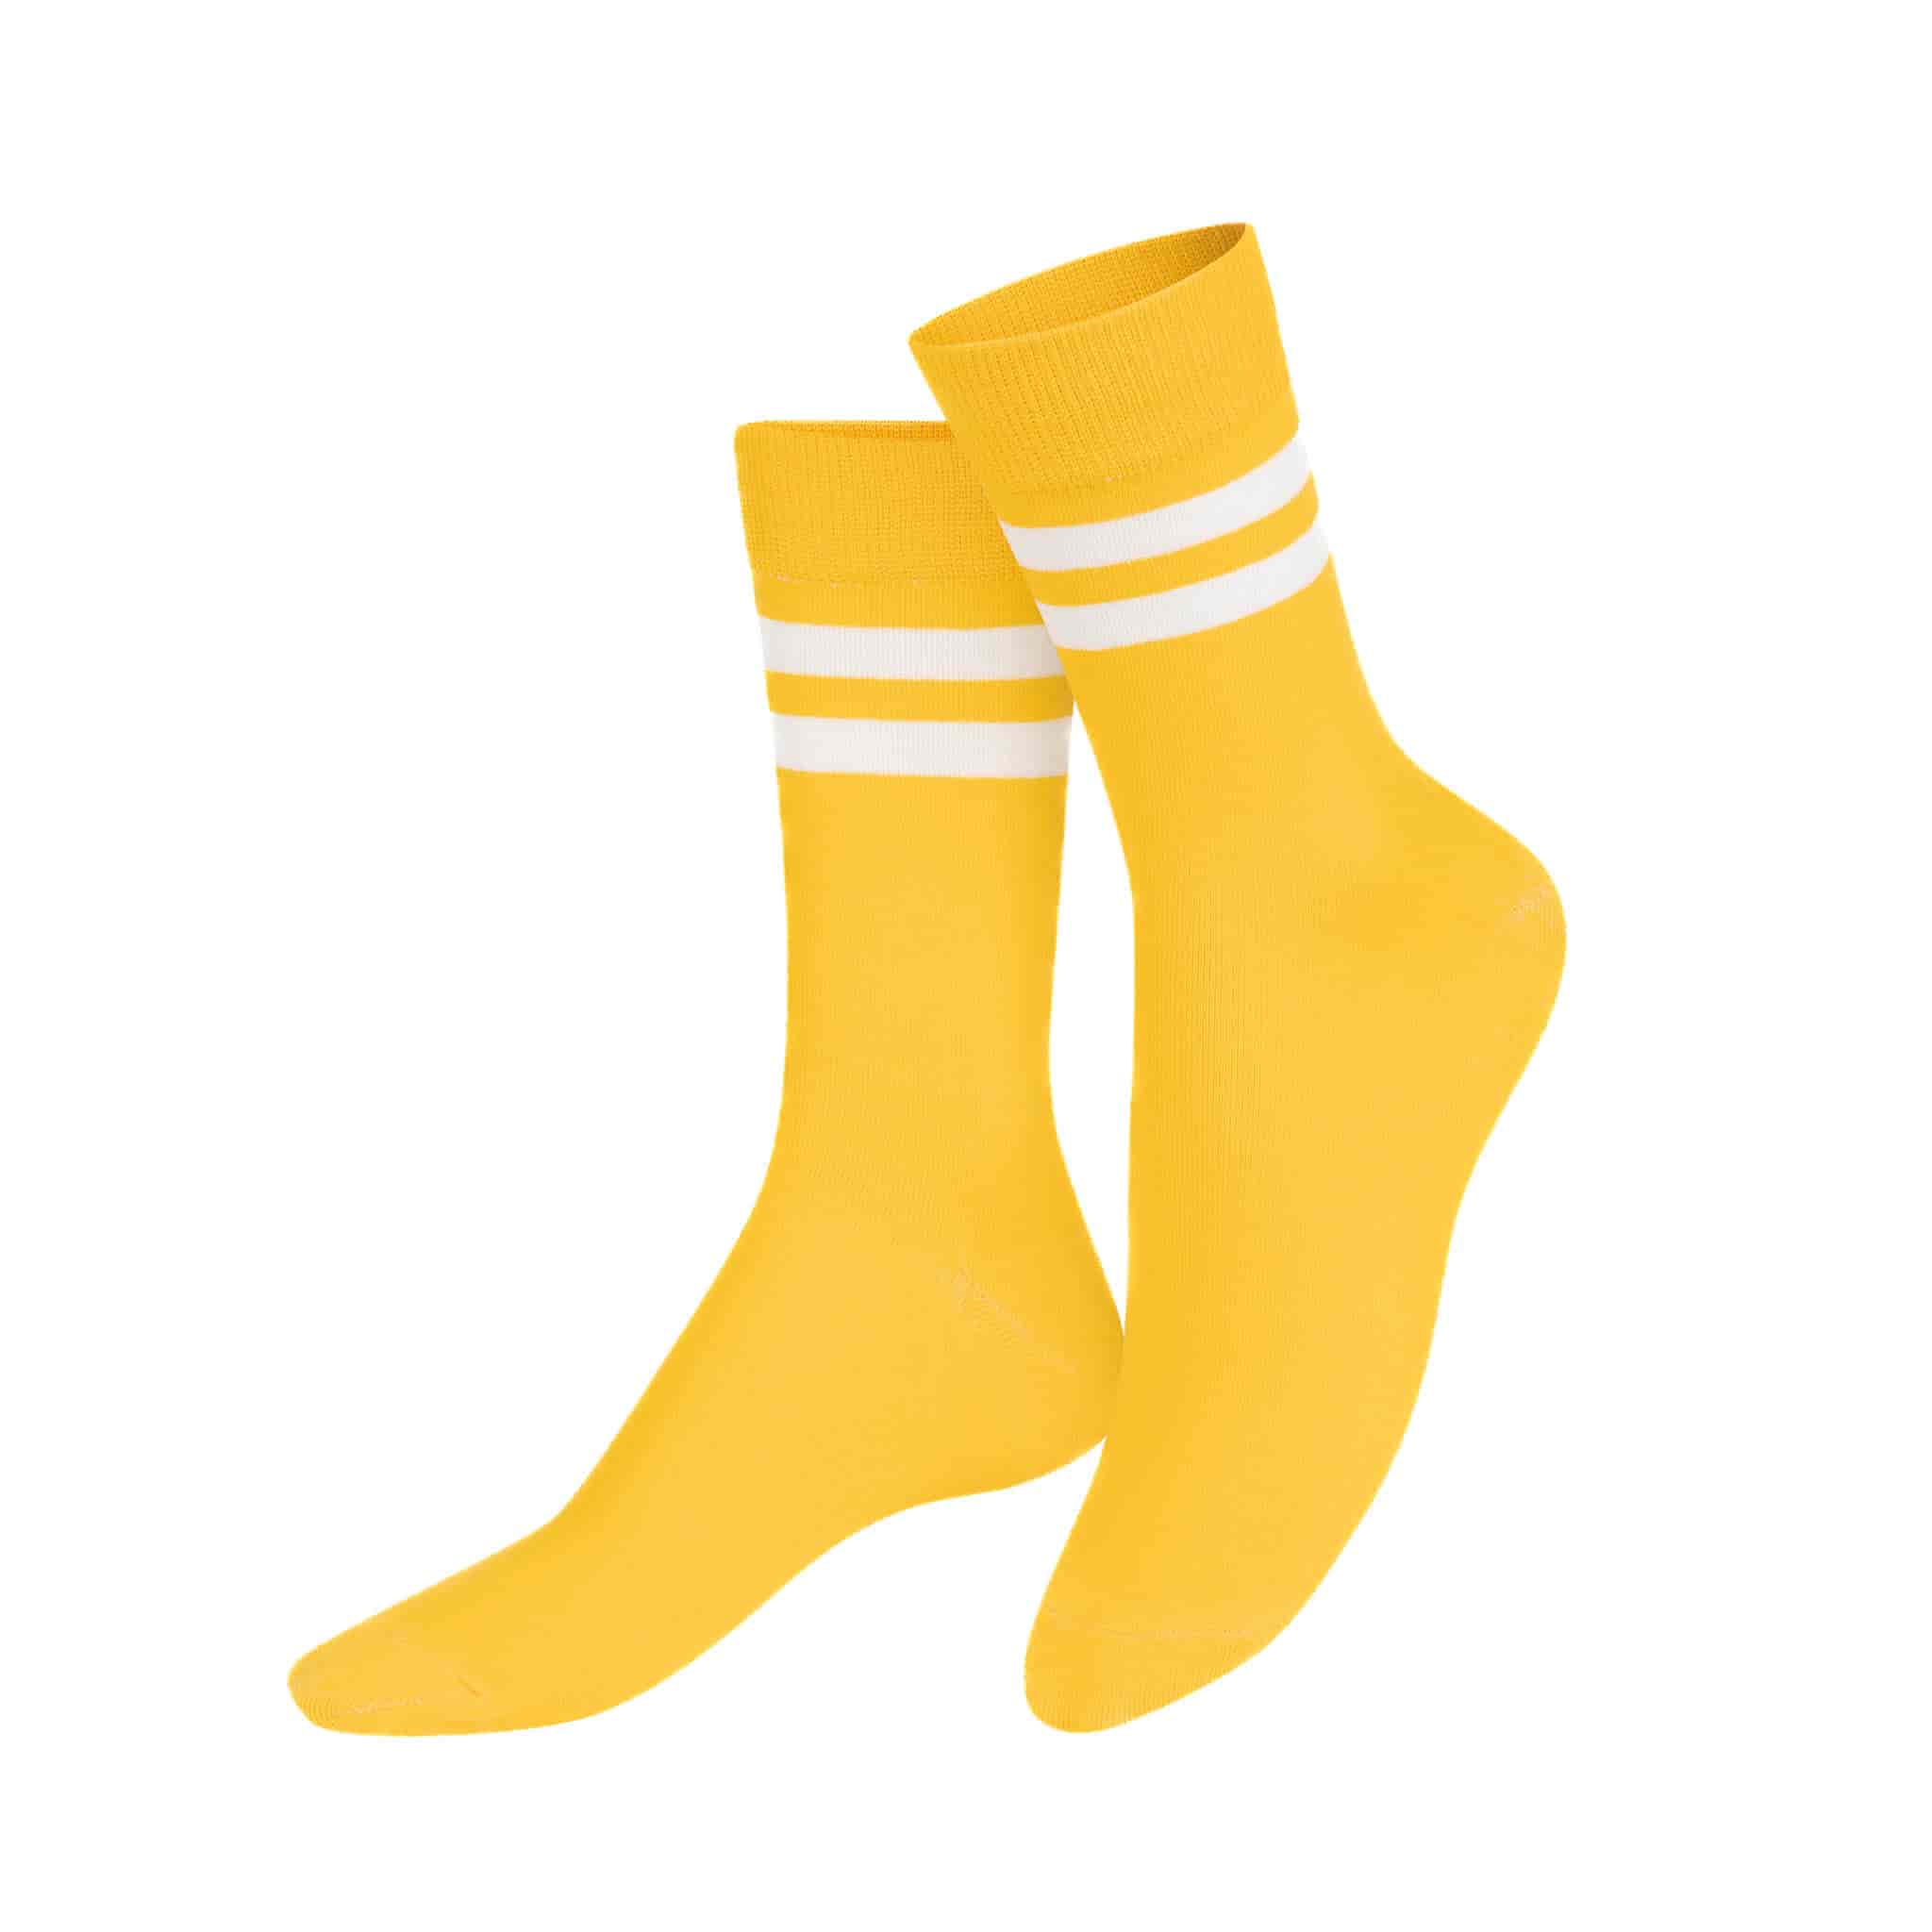 Gruyere Cheese Socks, 1 Pair